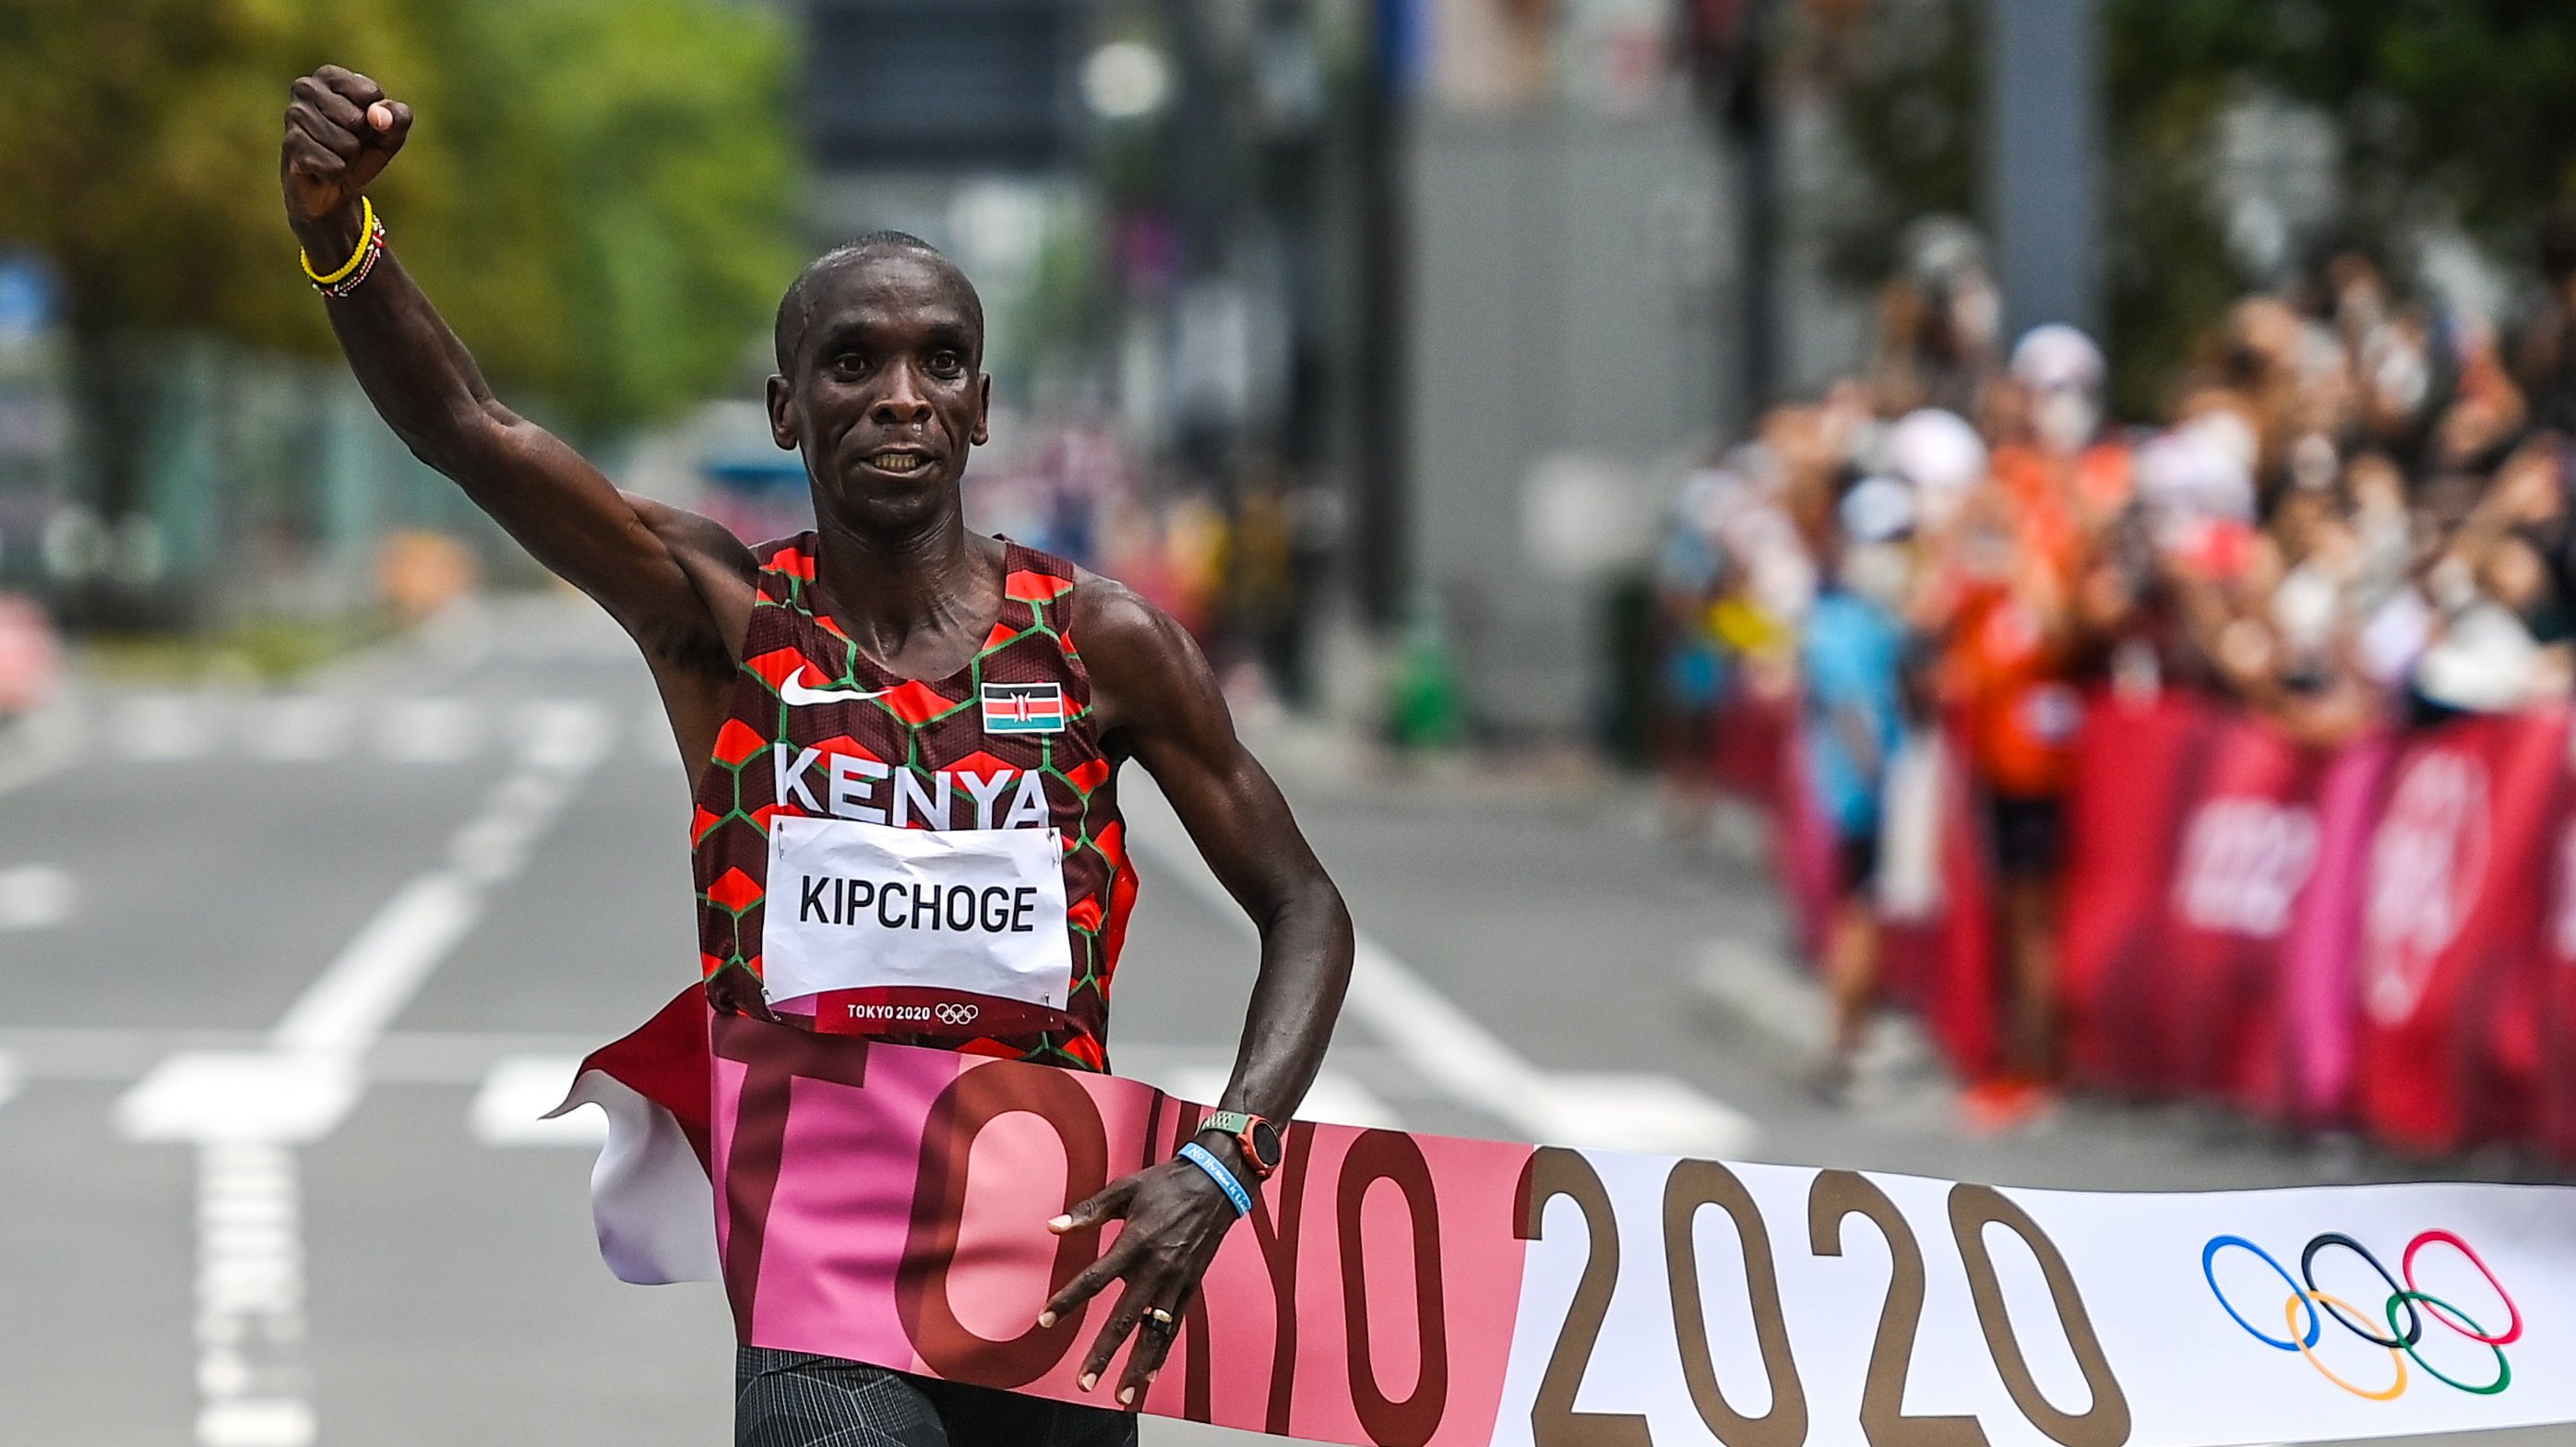 O atleta queniano de 36 anos renovou o título olímpico